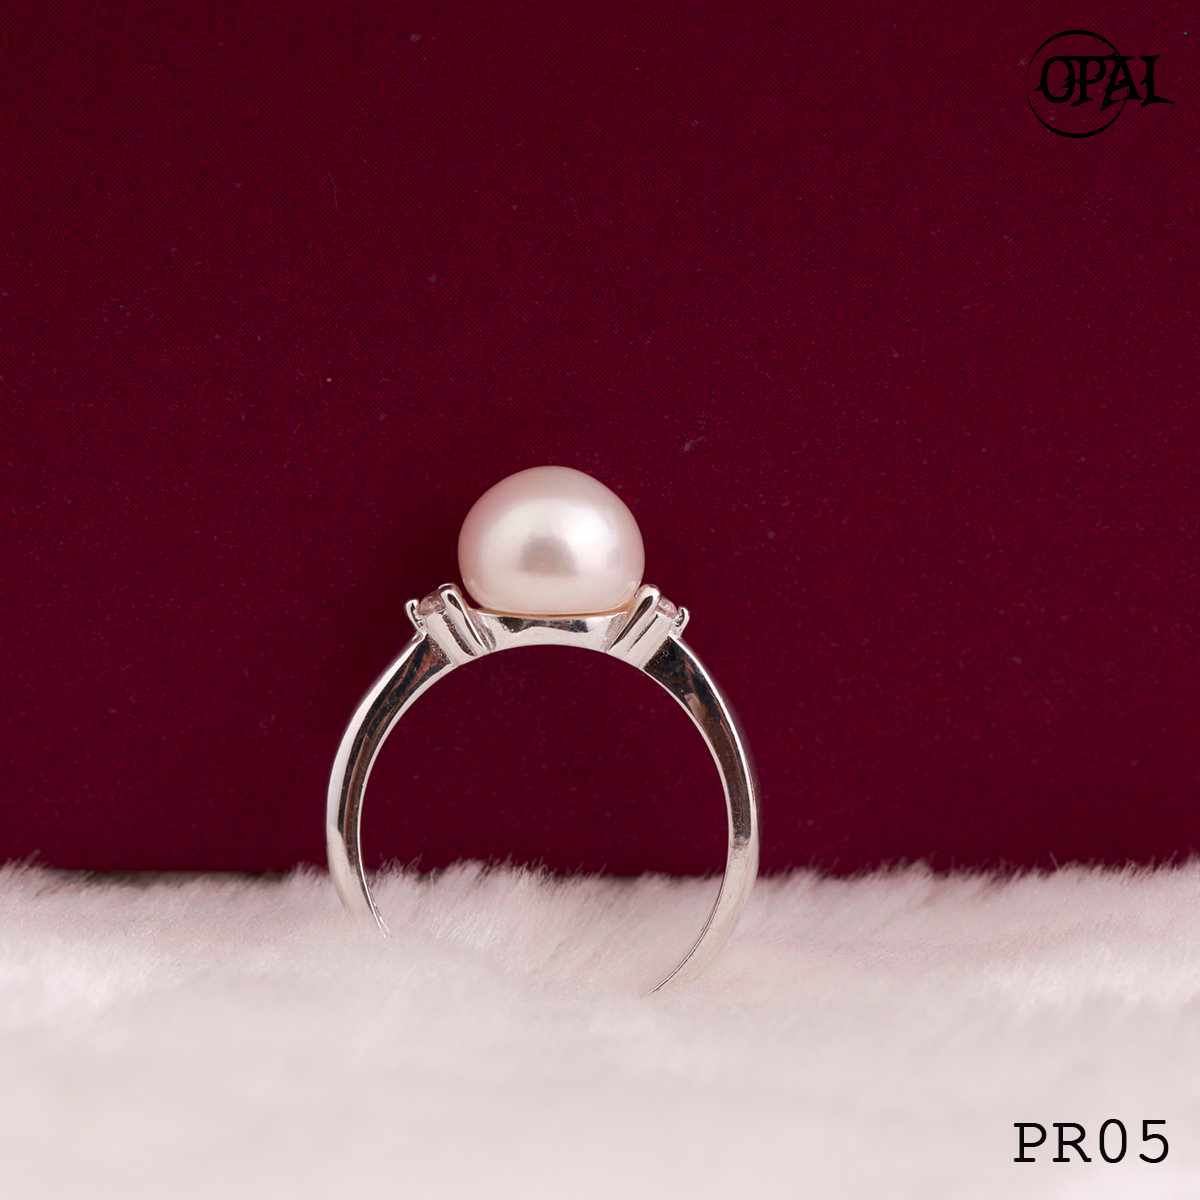  PR05 -Nhẫn bạc đính Ngọc Trai OPAL 